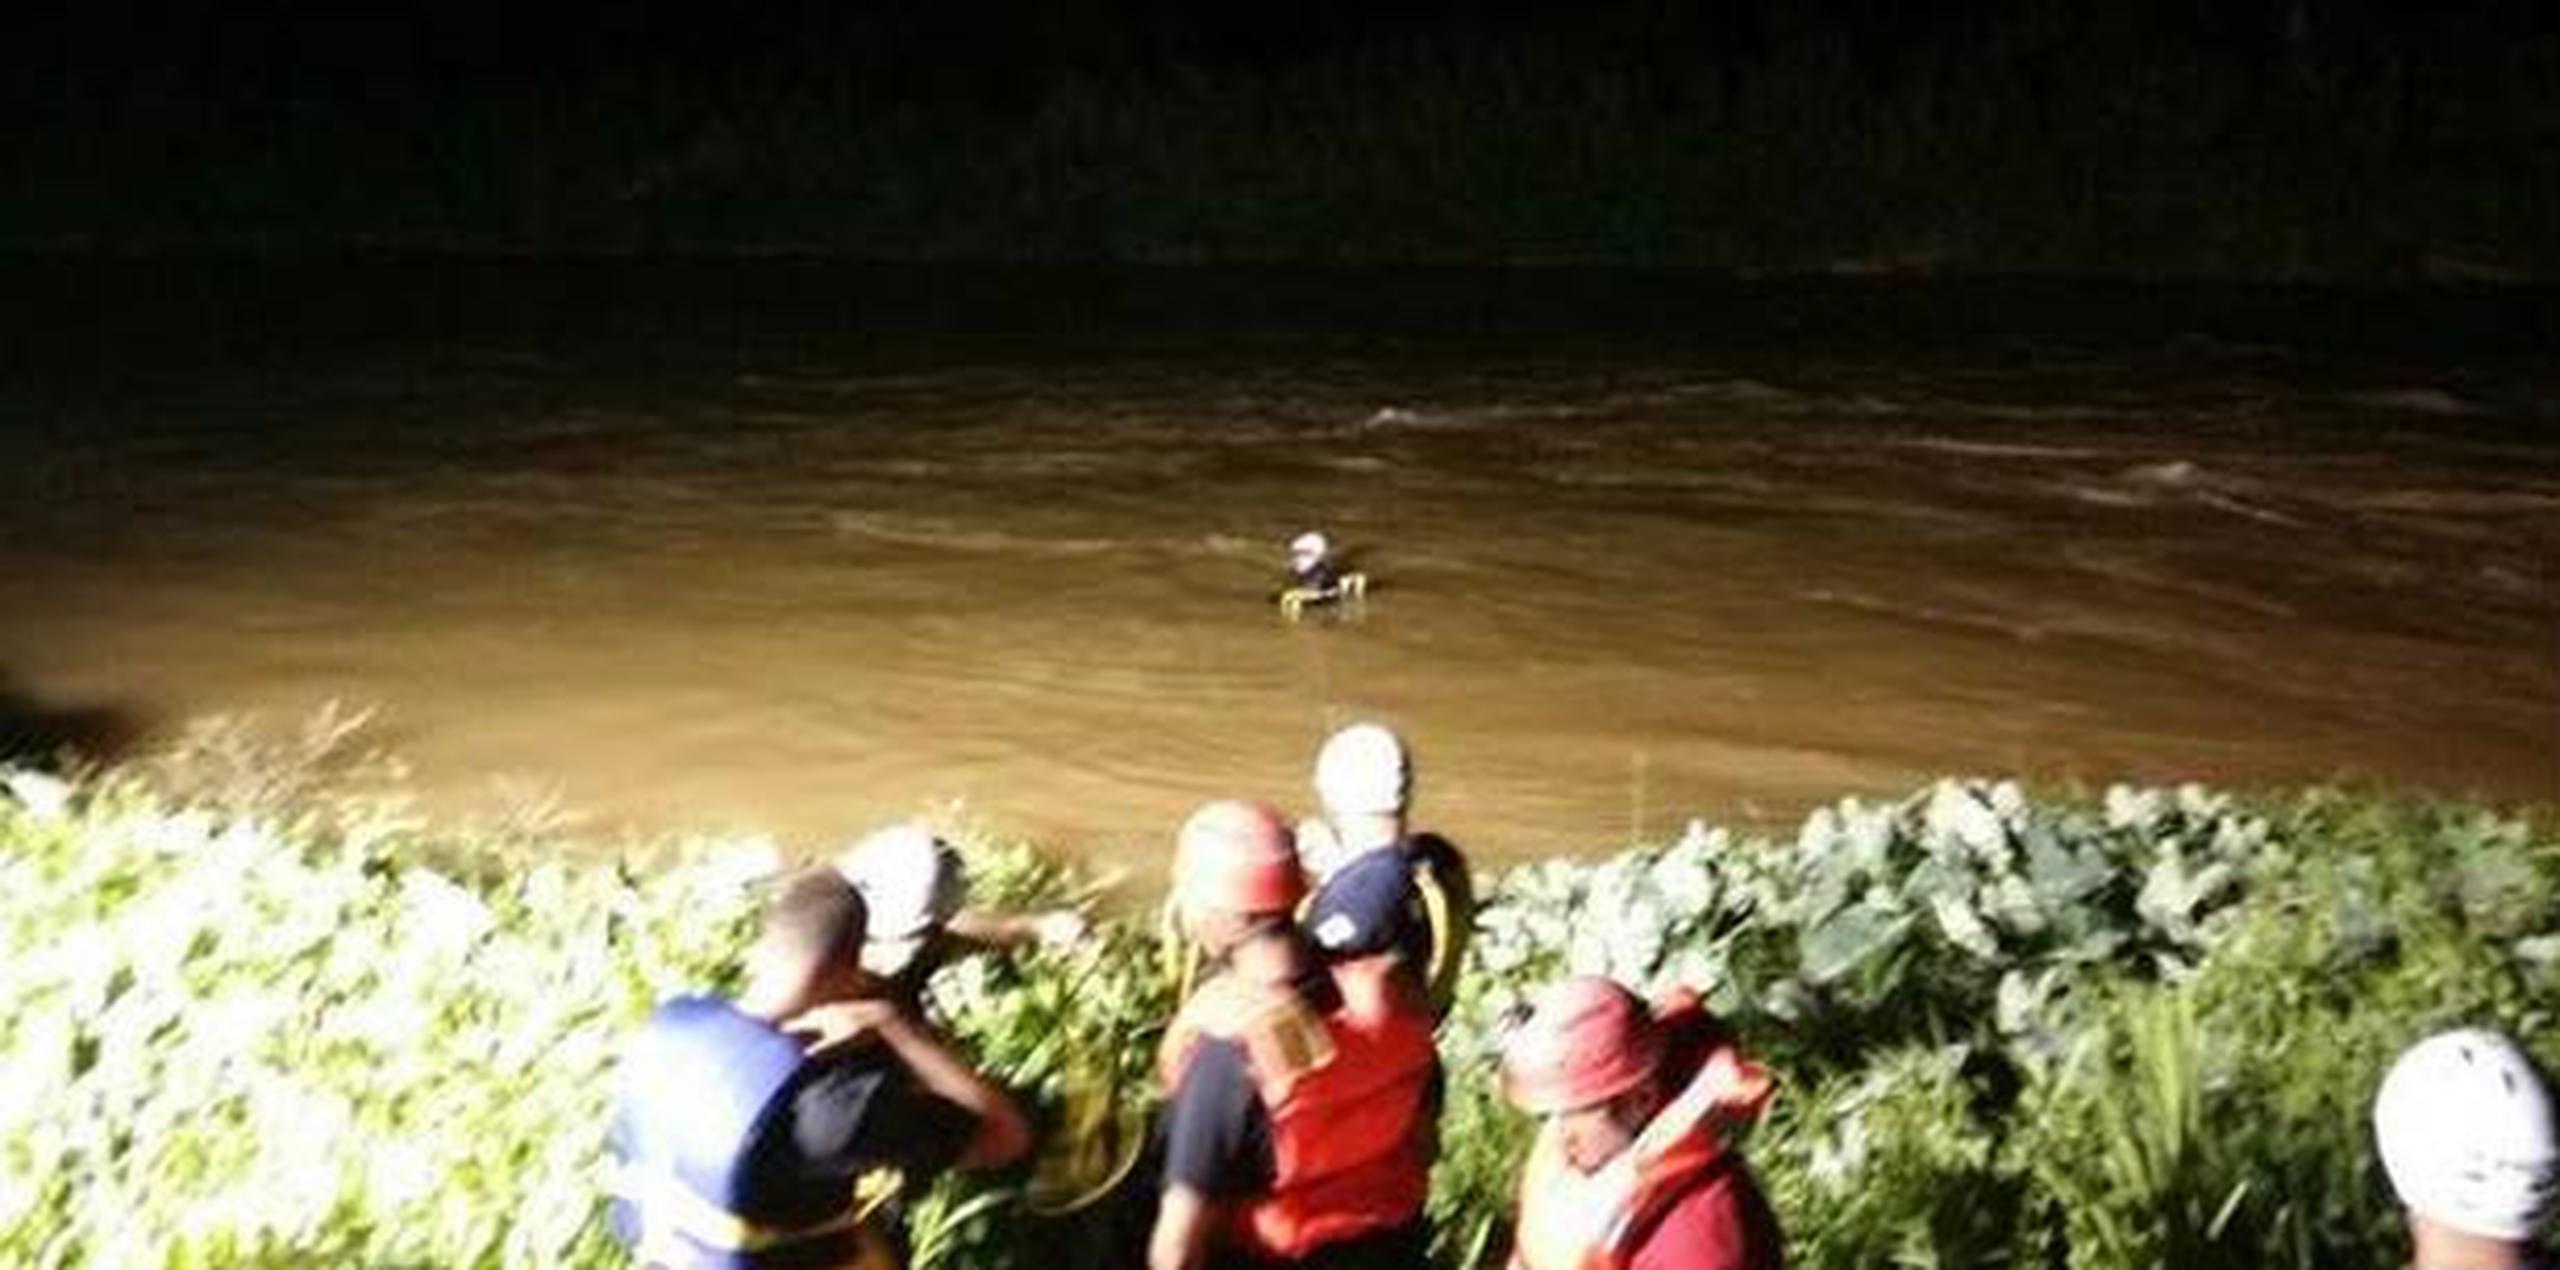 El rescate se pudo completar sin riesgos mayores a partir de las 10:30 p.m., cuando el nivel del Río Grande de Arecibo comenzó a bajar. (Twitter: @felipegomez1960)